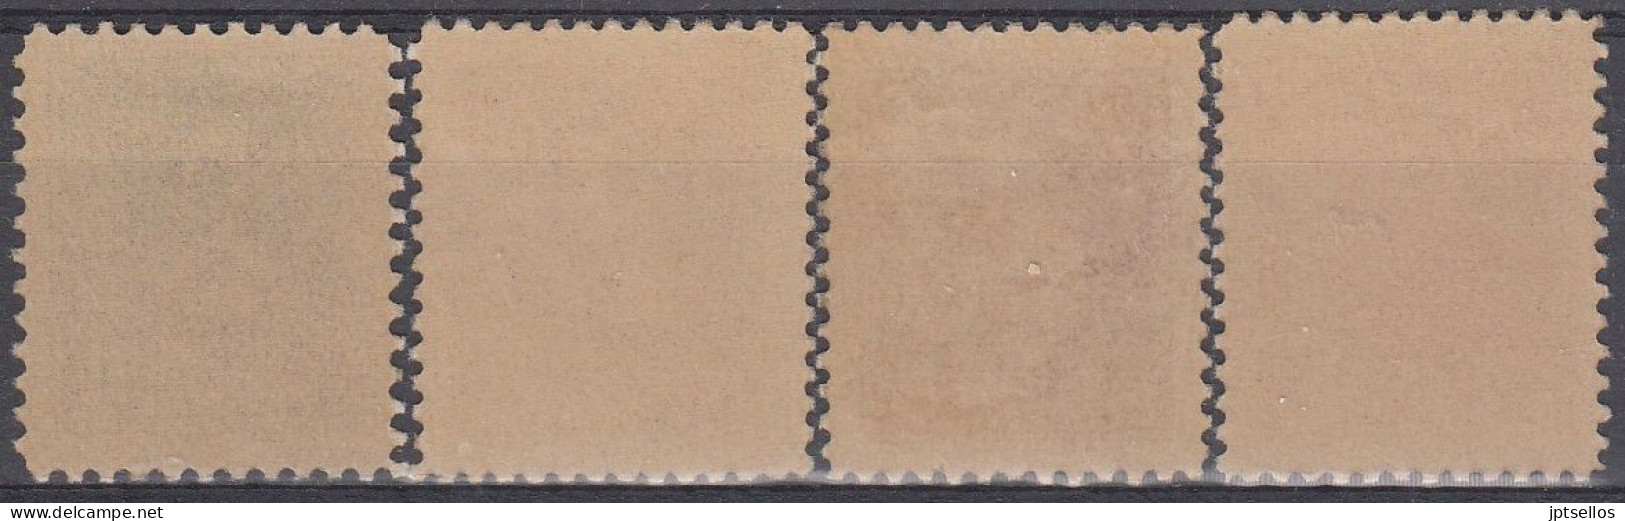 ESPAÑA 1938 Nº 841/844 NUEVO - Unused Stamps